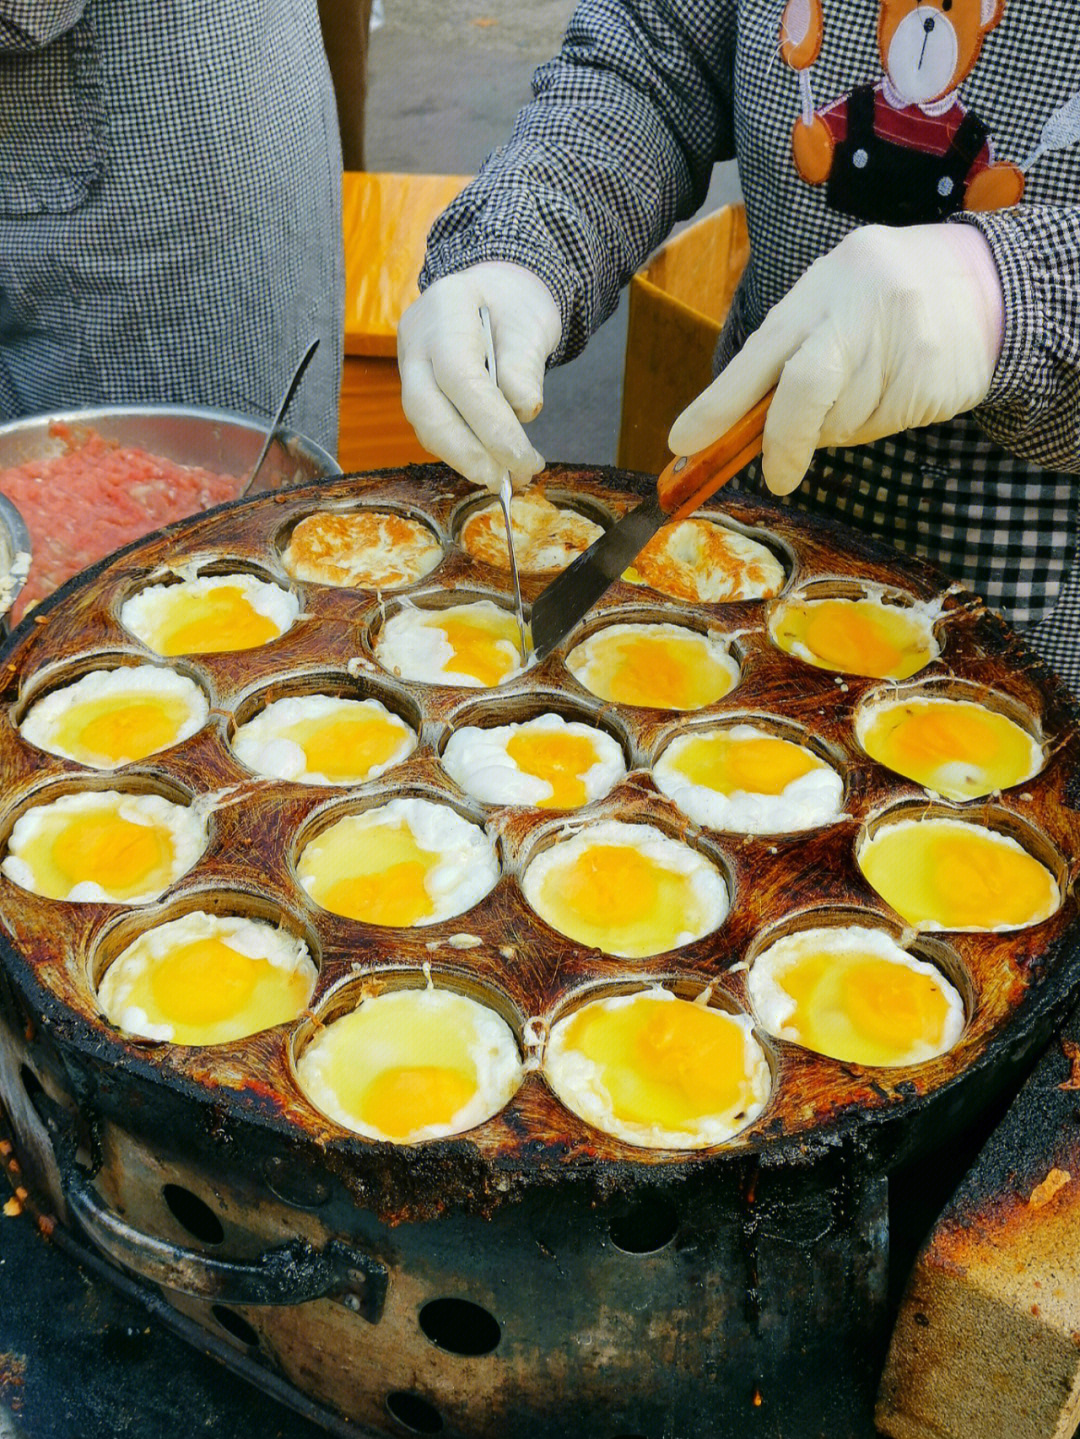 青岛兴山路早市的鸡蛋汉堡你值得拥有